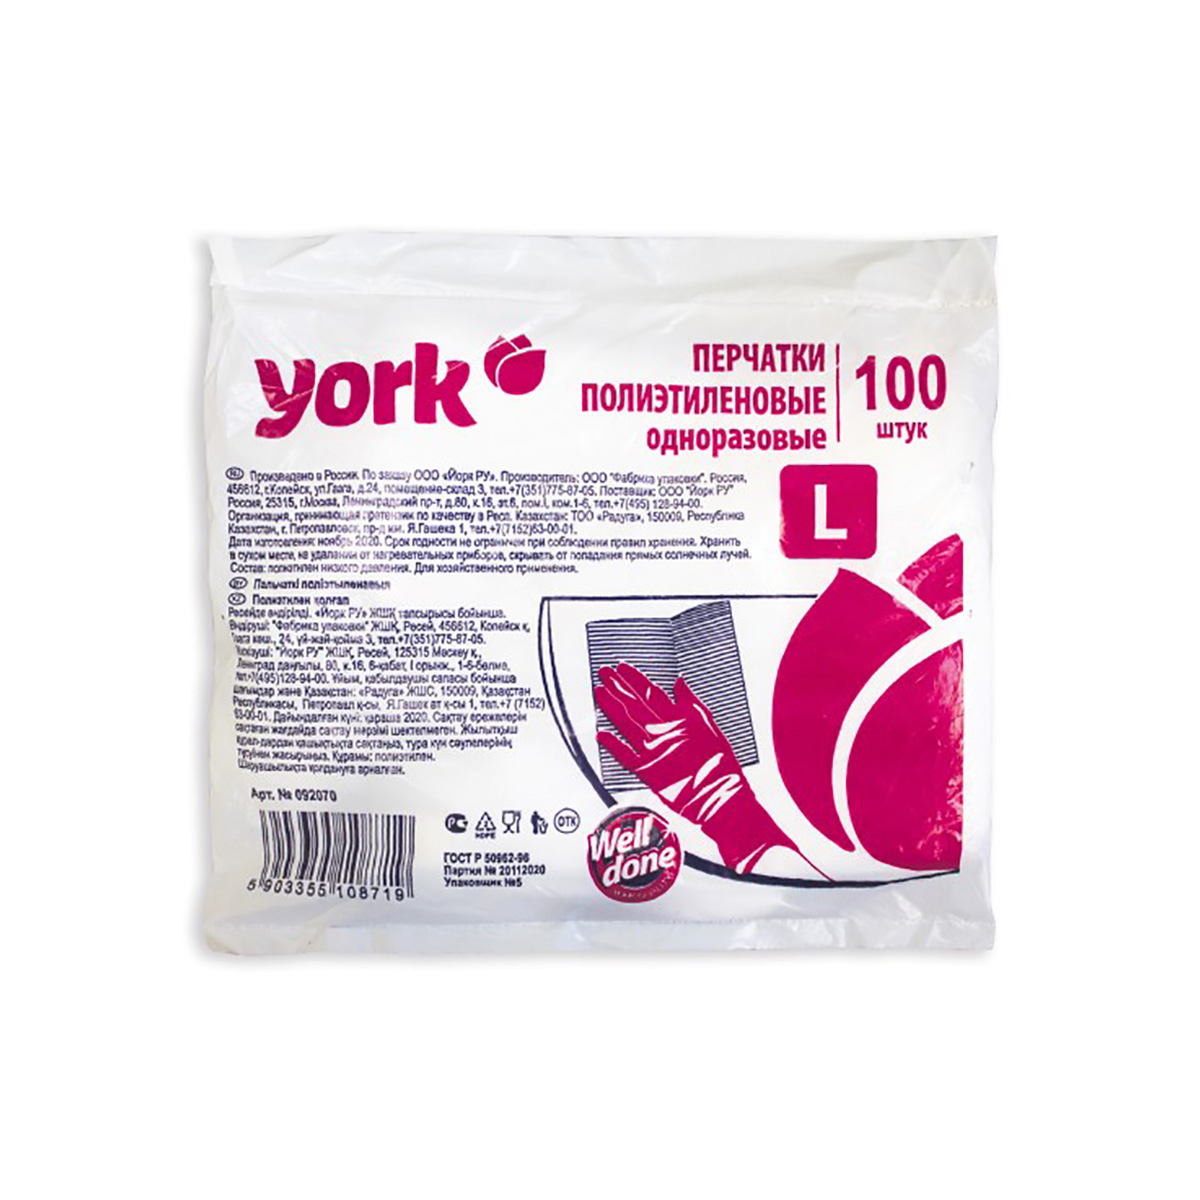 Перчатки полиэтиленовые прочные упак. 100 шт. (1/100) "york"